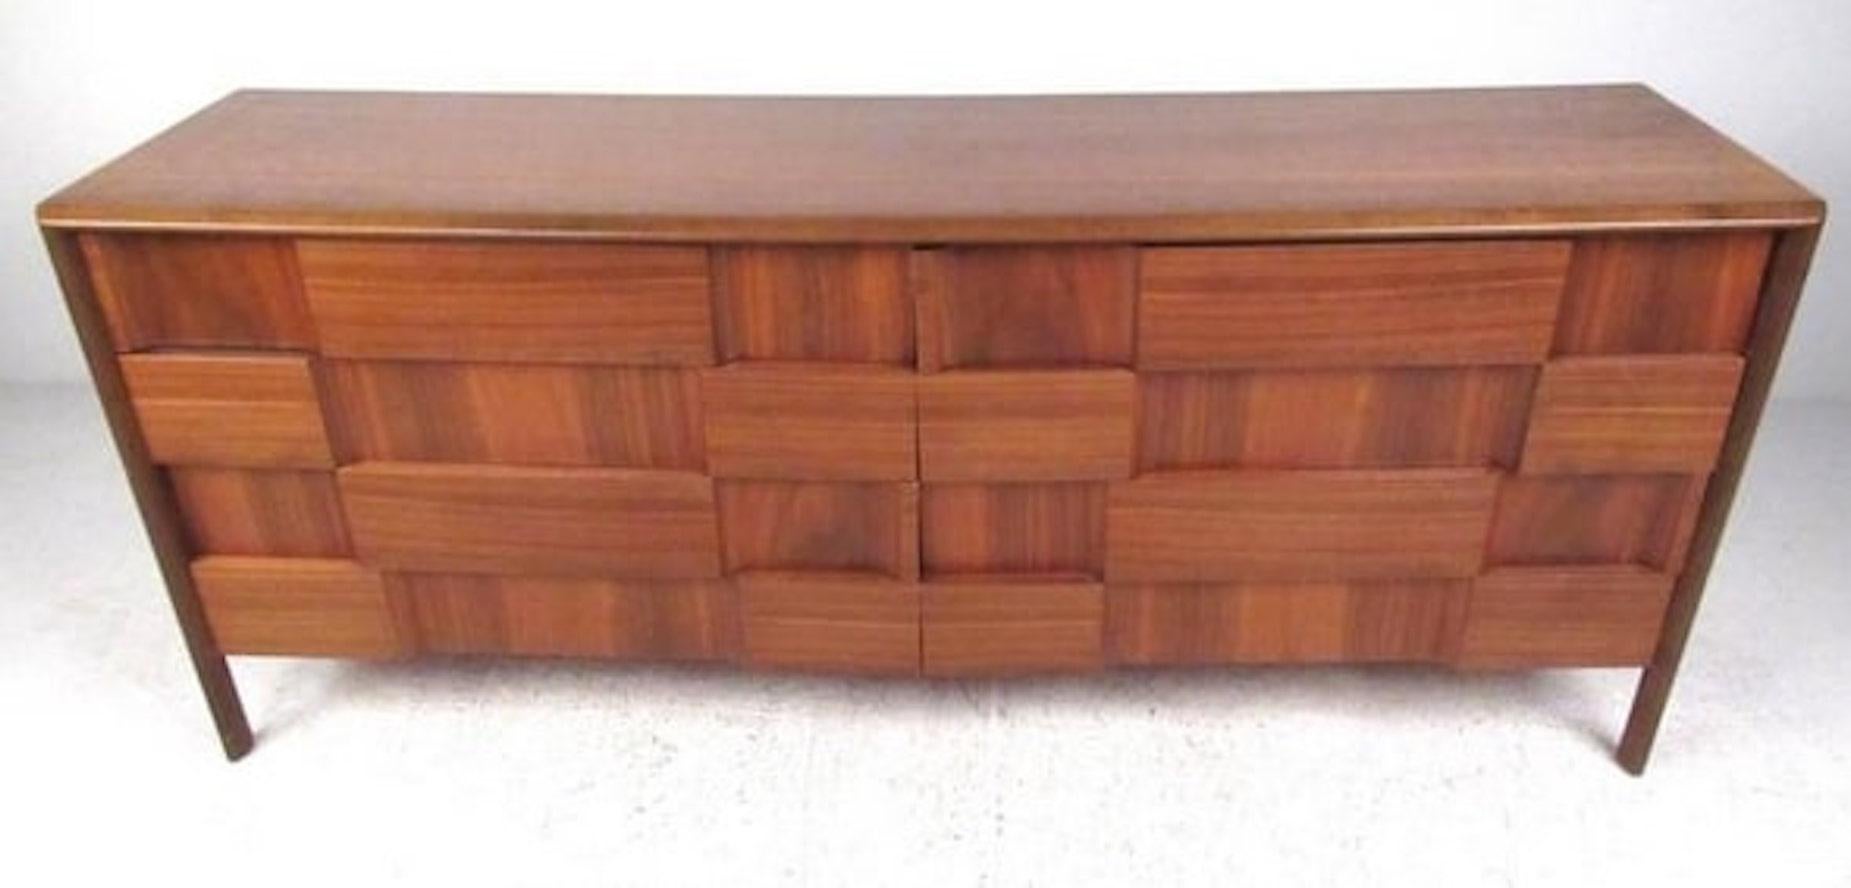 Die Kommode mit acht Schubladen aus Nussbaumholz von Edmond Spence, Schweden, um 1960, ist eine ideale Kommode mit neun Schubladen, perfekt für das heimische Schlafzimmer. Die geschnitzte Schachbrettfront ist eine beeindruckende Ergänzung für jedes